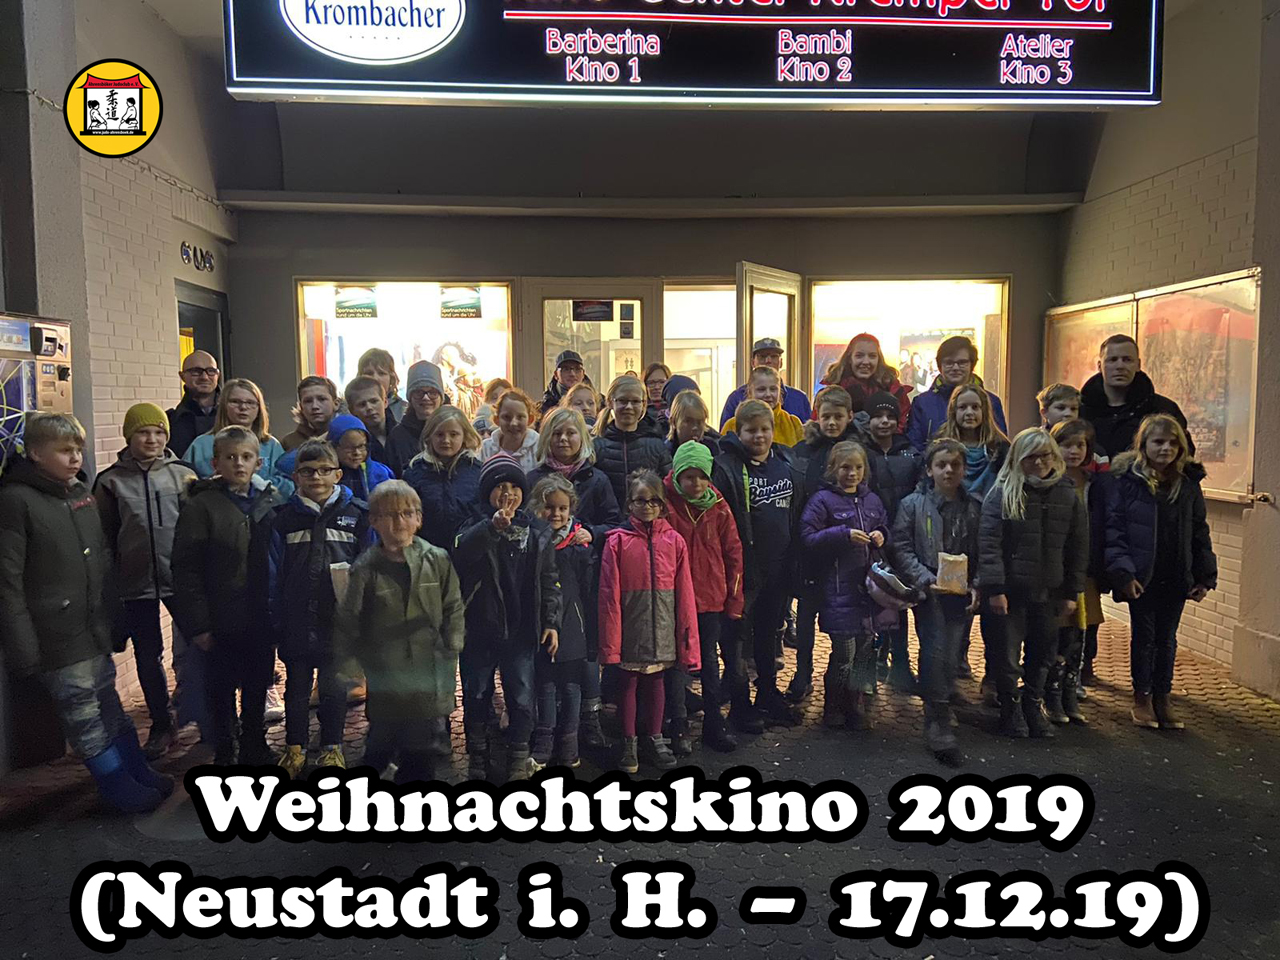 Weihnachtskino 2019 (Neustadt i. H. - 17.12.19)